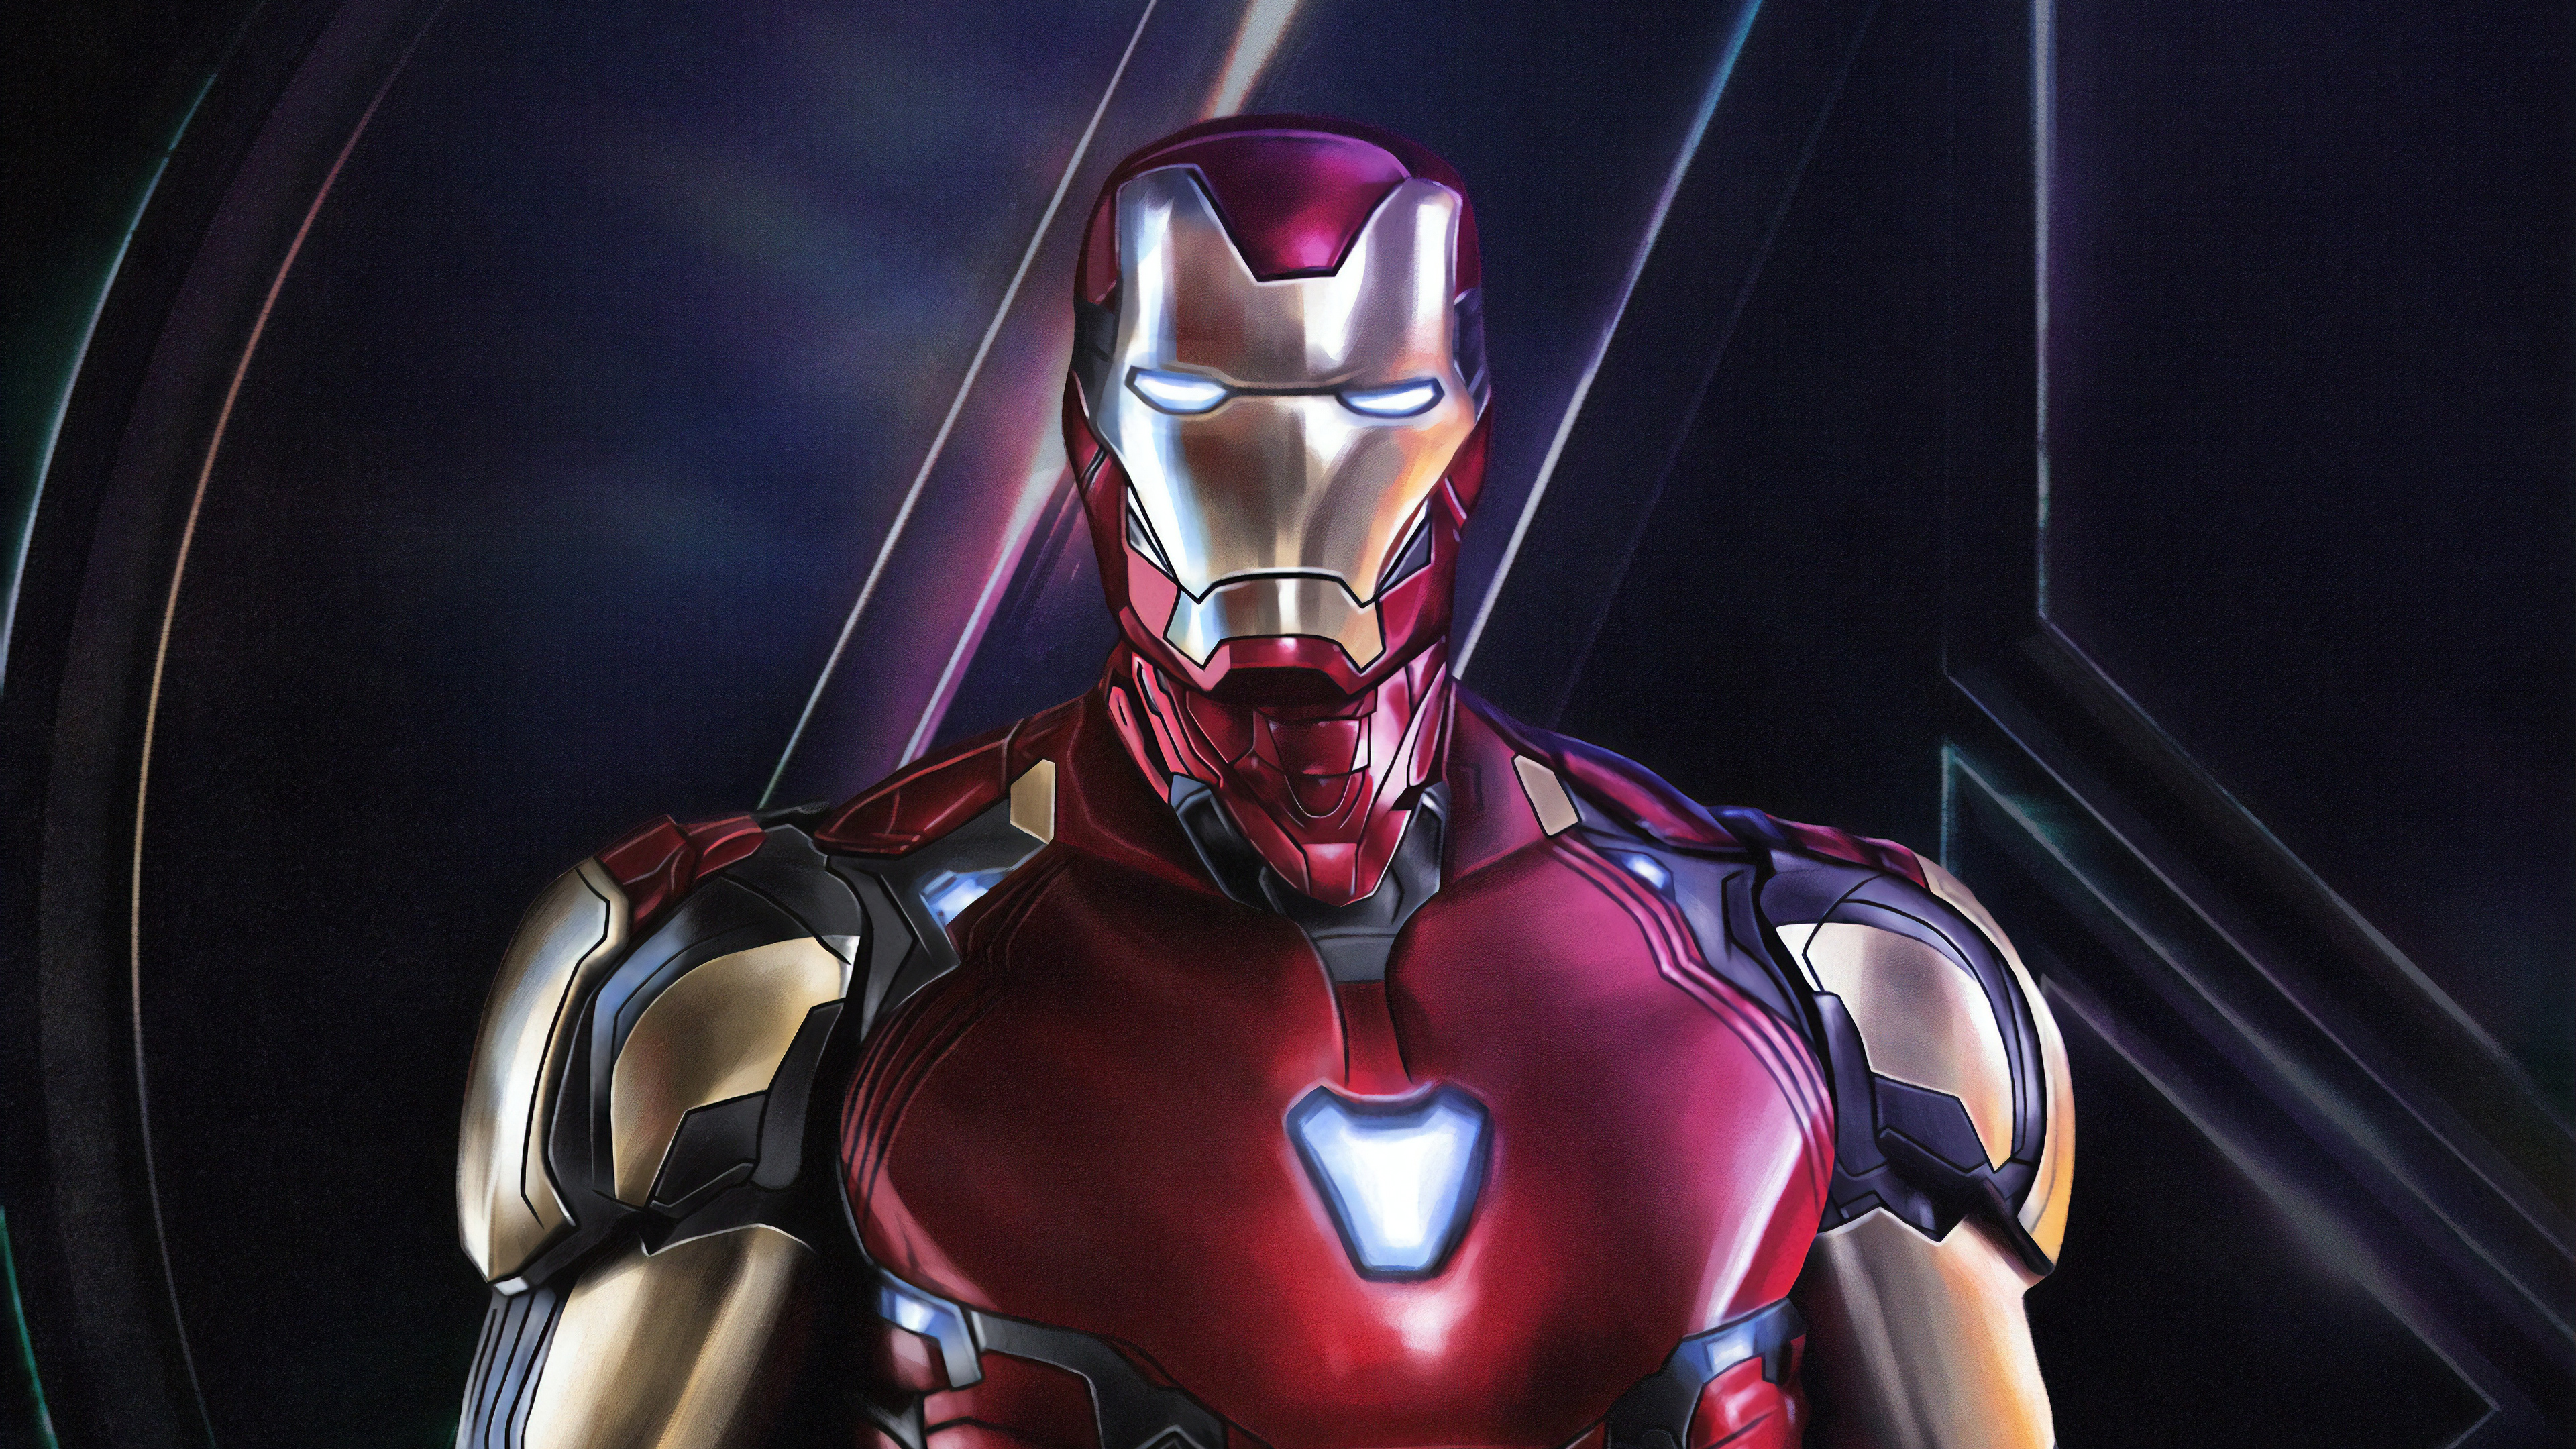 Hình nền Iron Man chất lượng cao sẽ khiến cho các fan hâm mộ Marvel phấn khích và thích thú. Cùng trải nghiệm những hình nền HD tuyệt đẹp, đầy sức mạnh và đậm chất siêu anh hùng đến từ Iron Man.